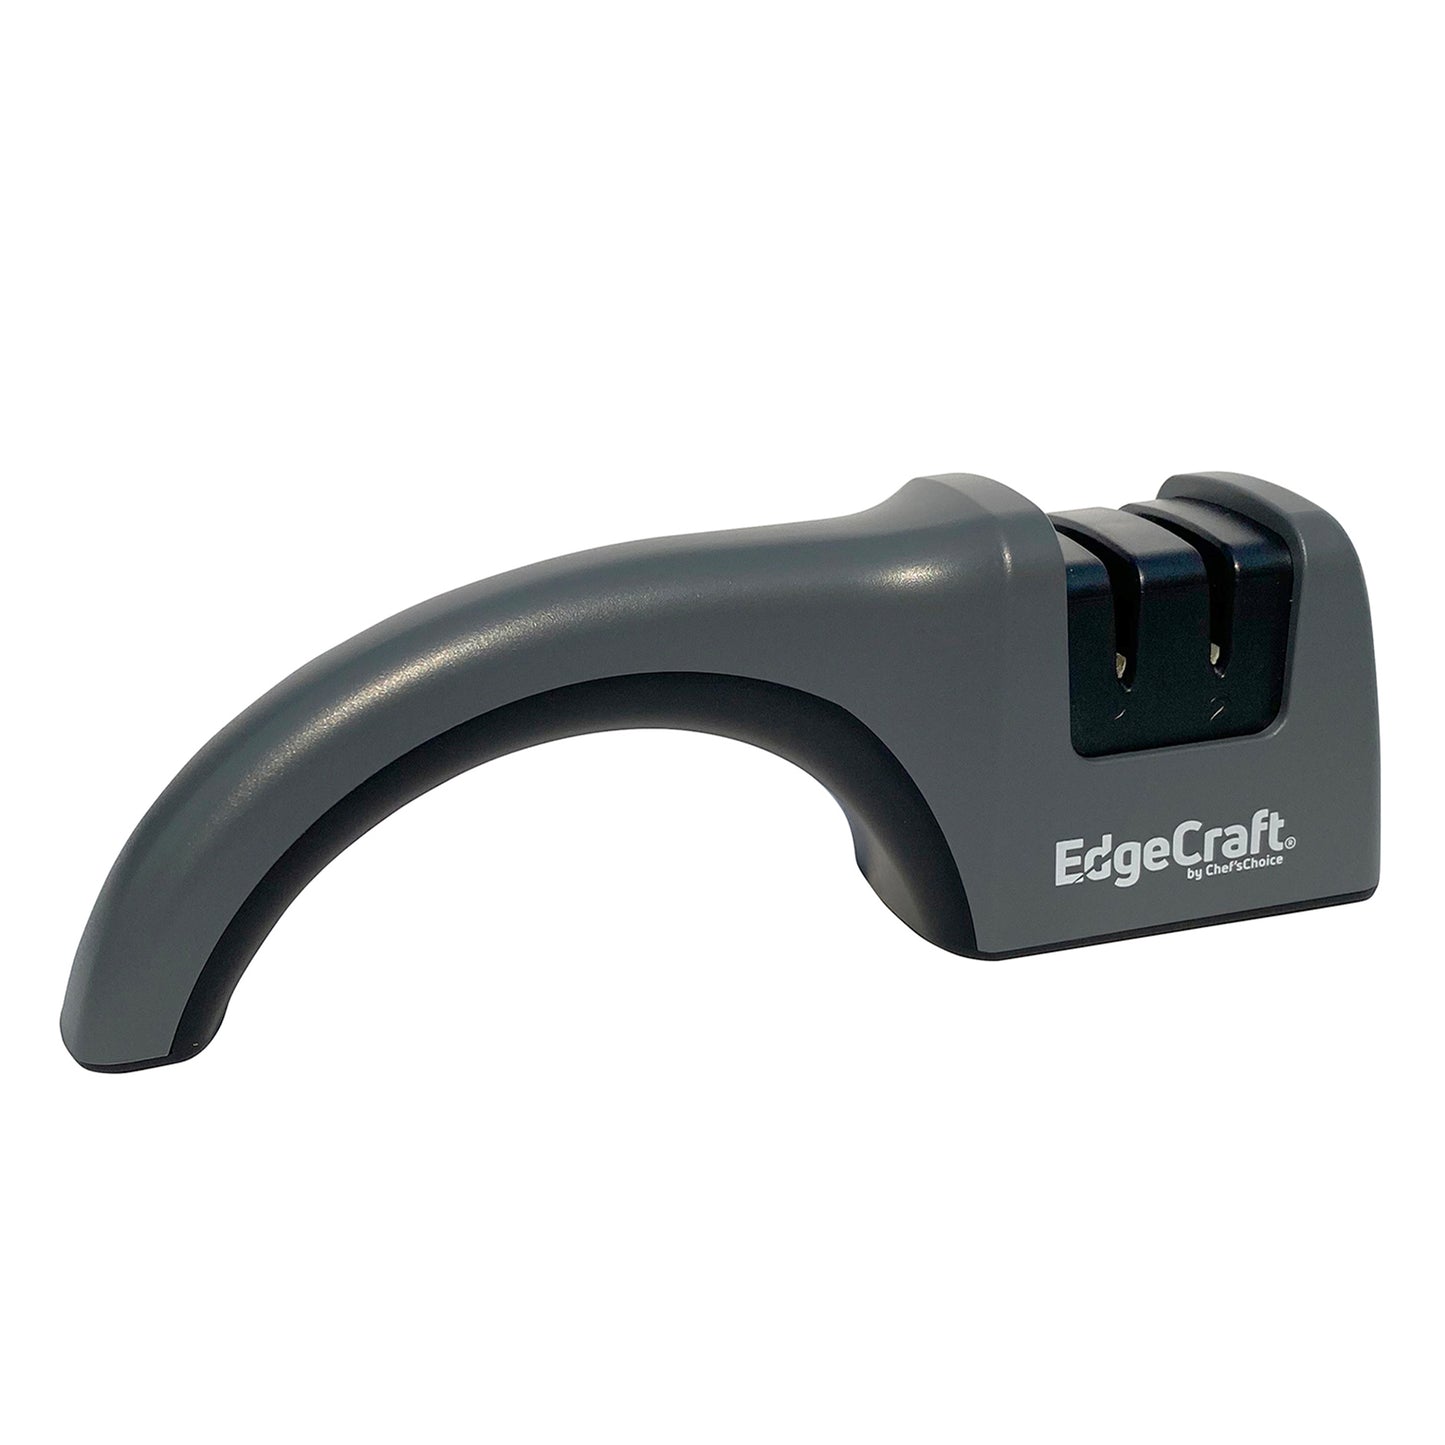 EdgeCraft Model E442 Manual Knife Sharpener, in Gray